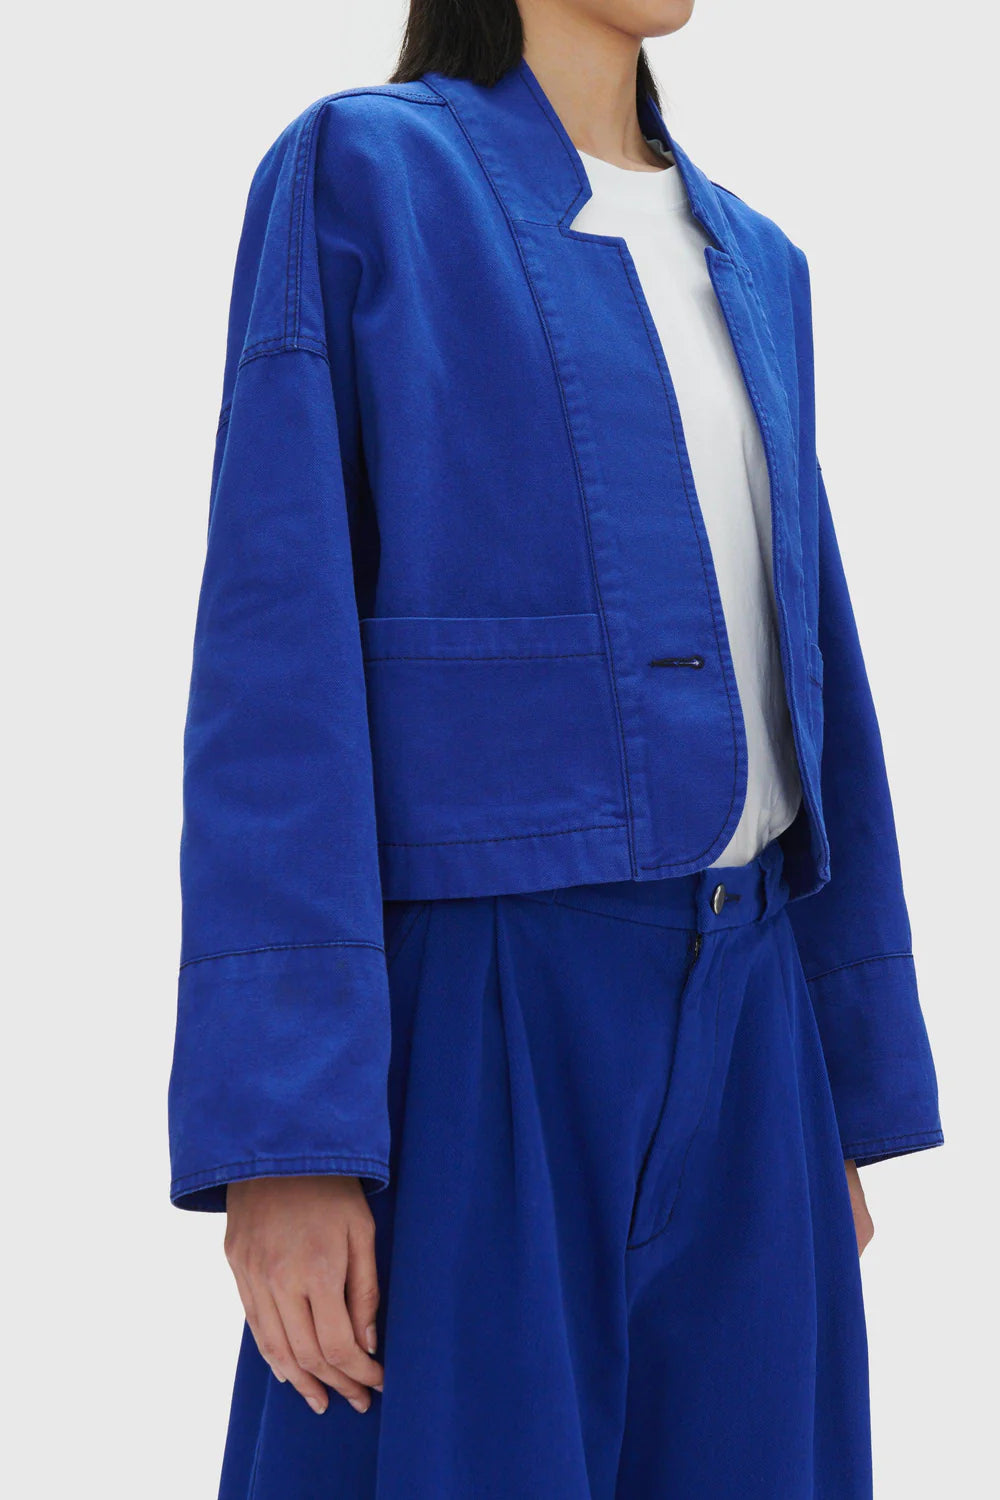 Dealian Jacket - Blue